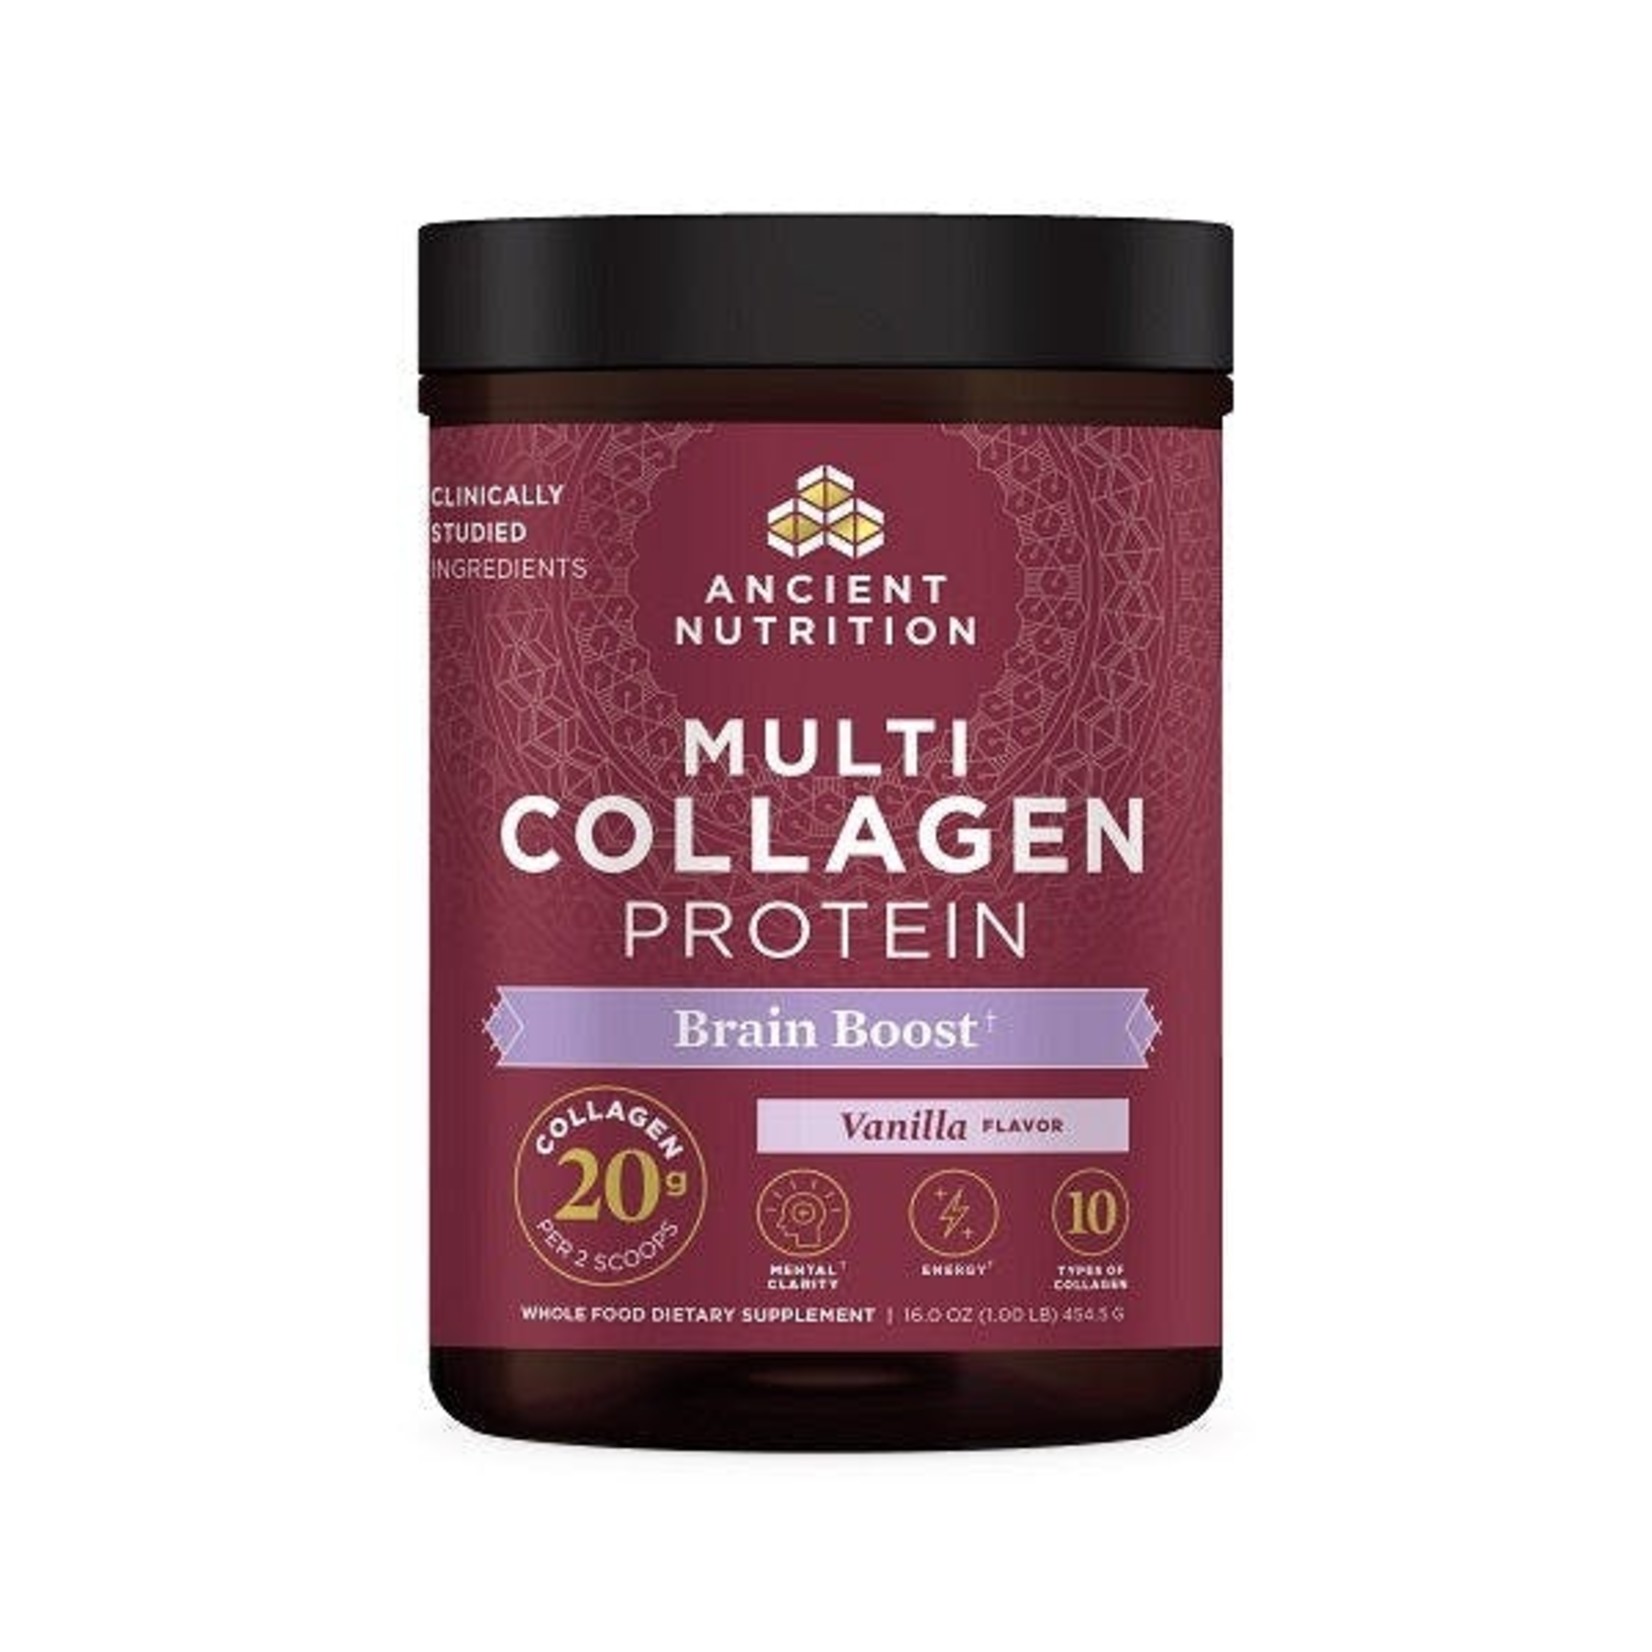 Ancient Nutrition Ancient Nutrition - Multi Collagen Protein Brain Boost Vanilla - 454 g